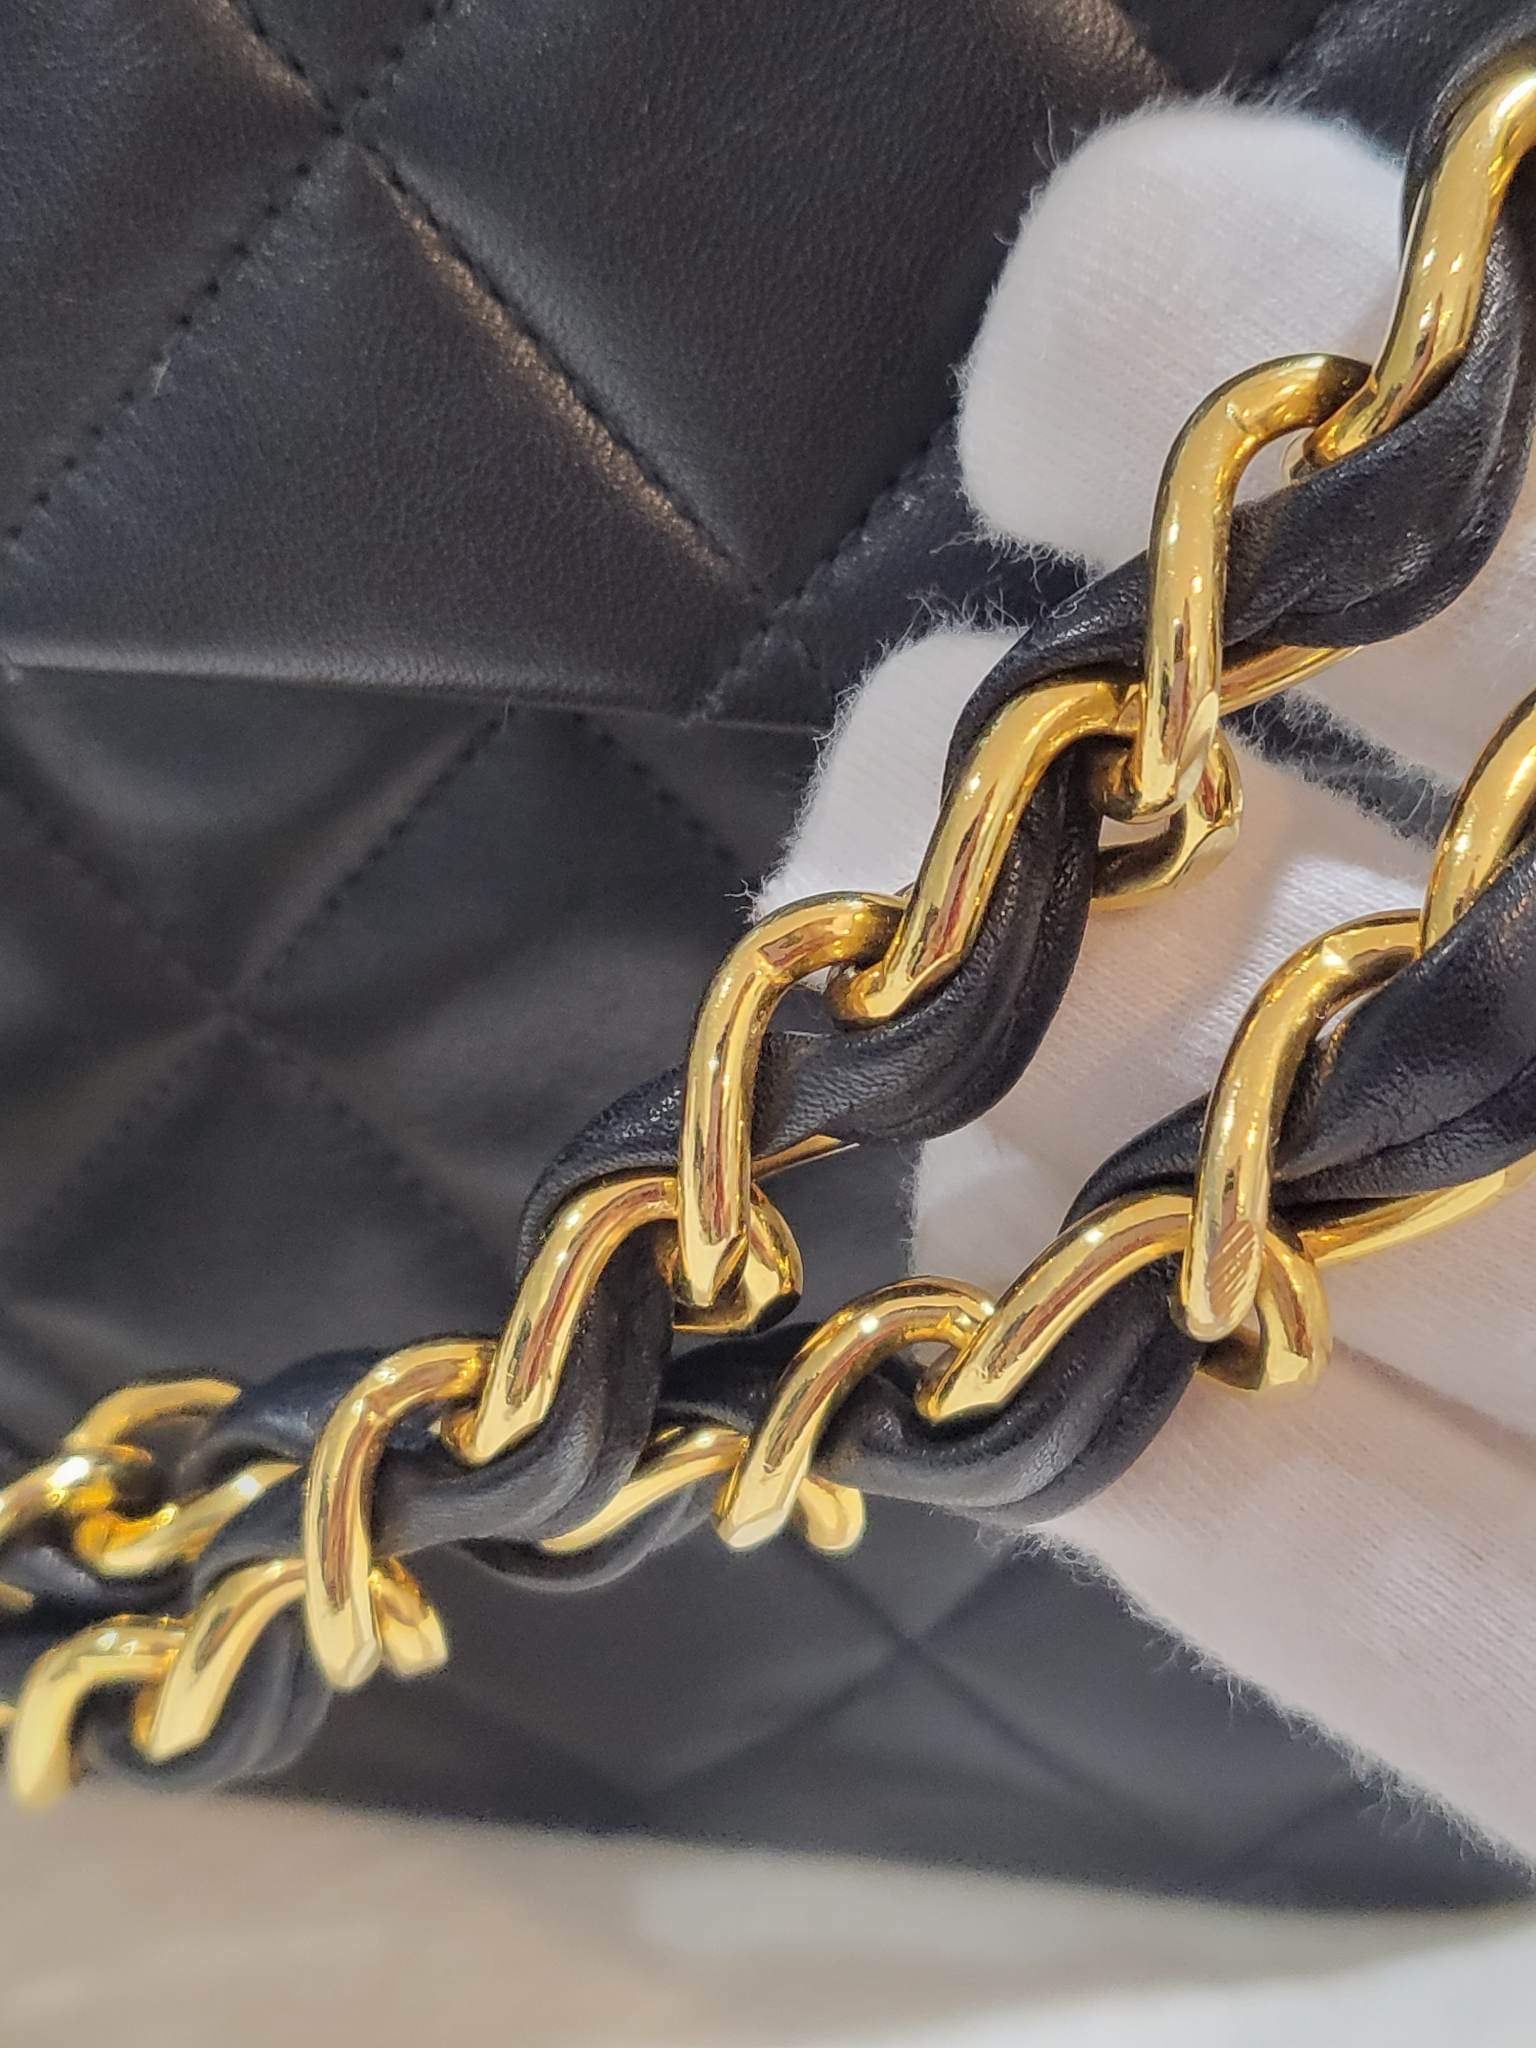 Chanel Beige CC Open Top Mini Chain Tote Gold Hardware, 1989-1991, Womens Handbag